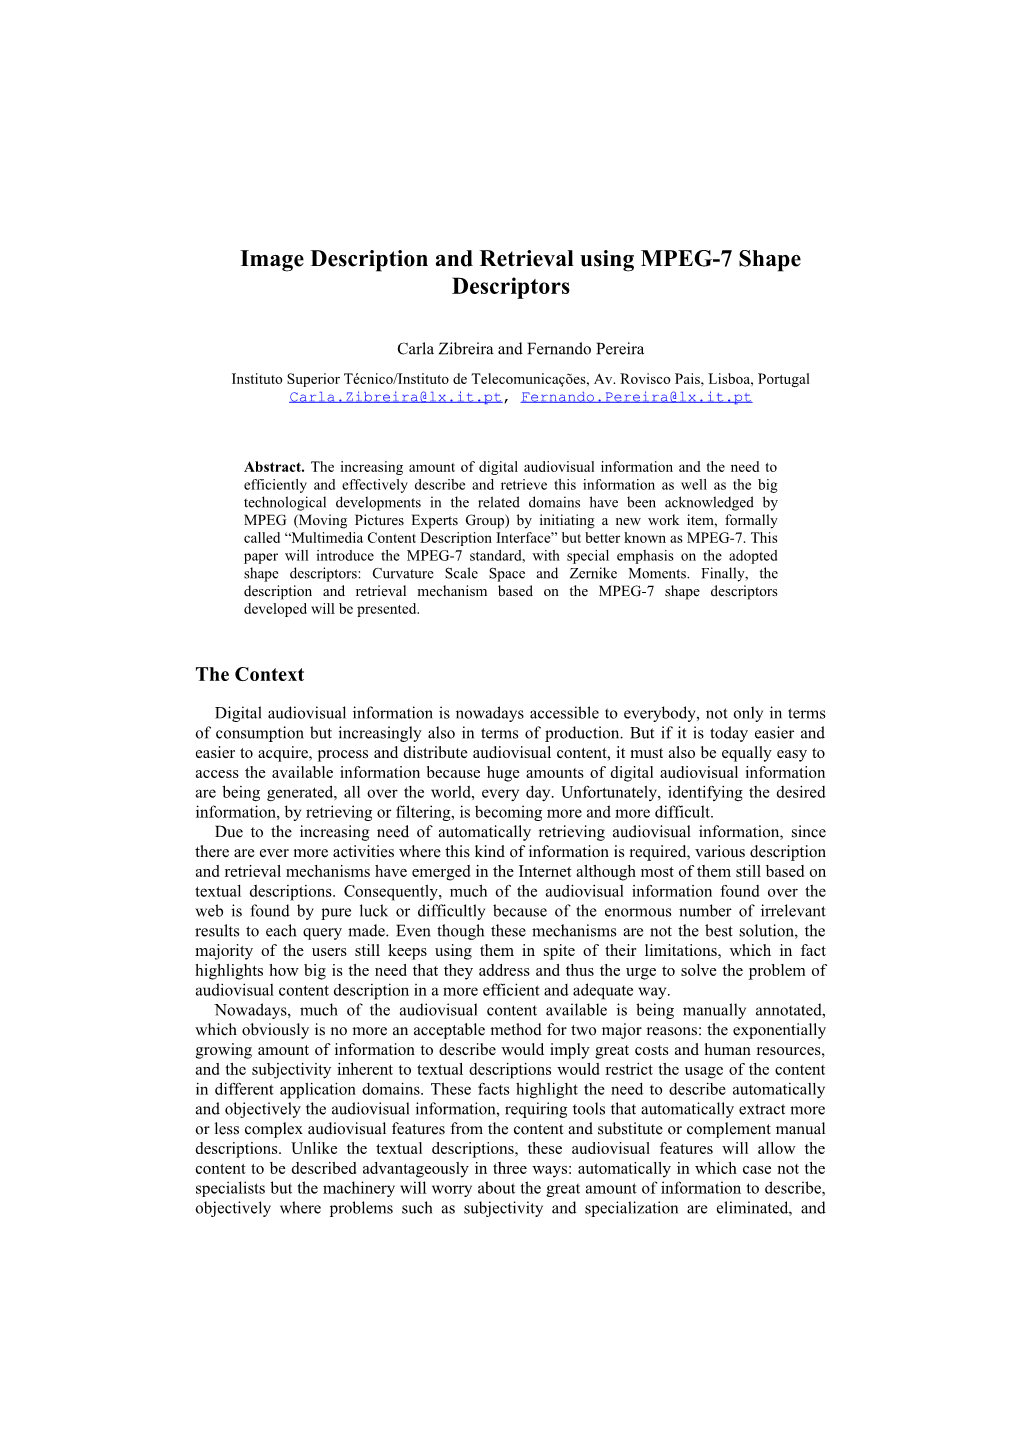 Image Description and Retrieval Using MPEG-7 Shape Descriptors